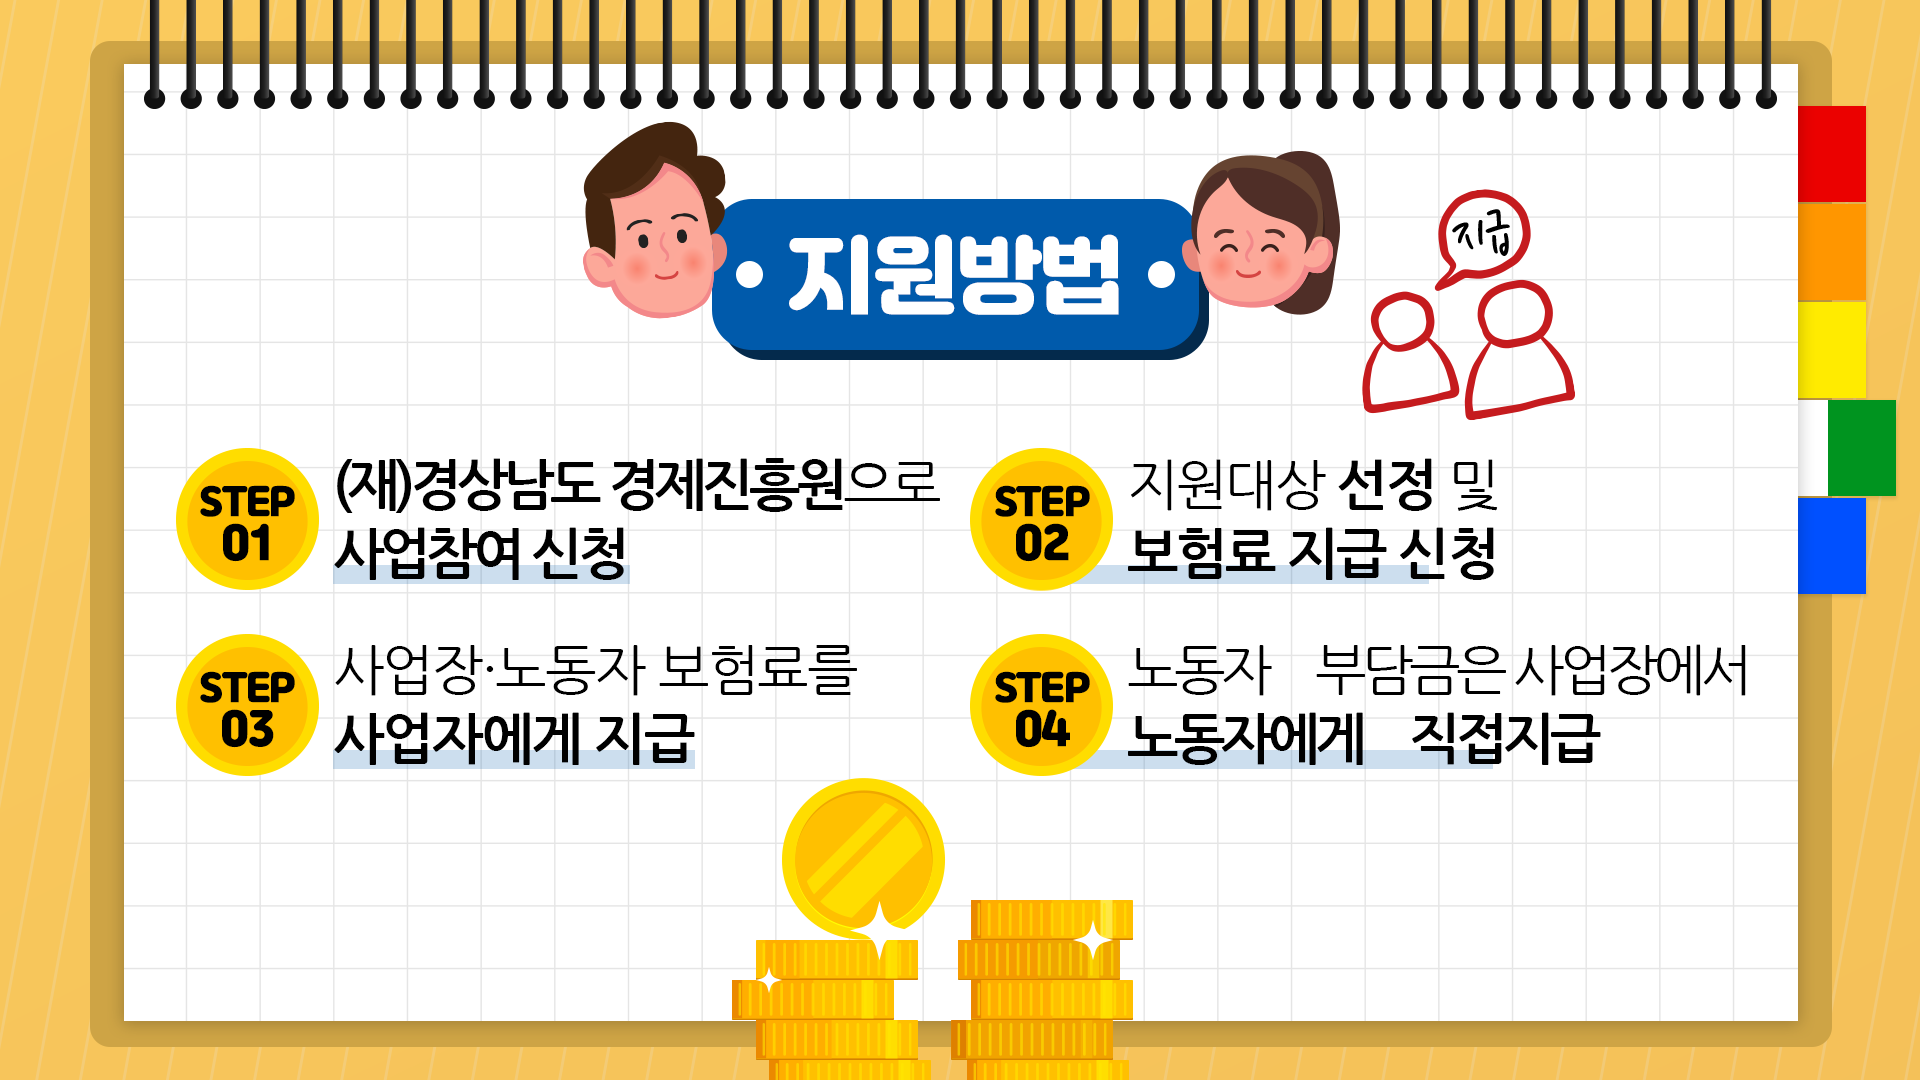 고용보험-미가입-사업장-4대보험료-지원사업_5_최종.png